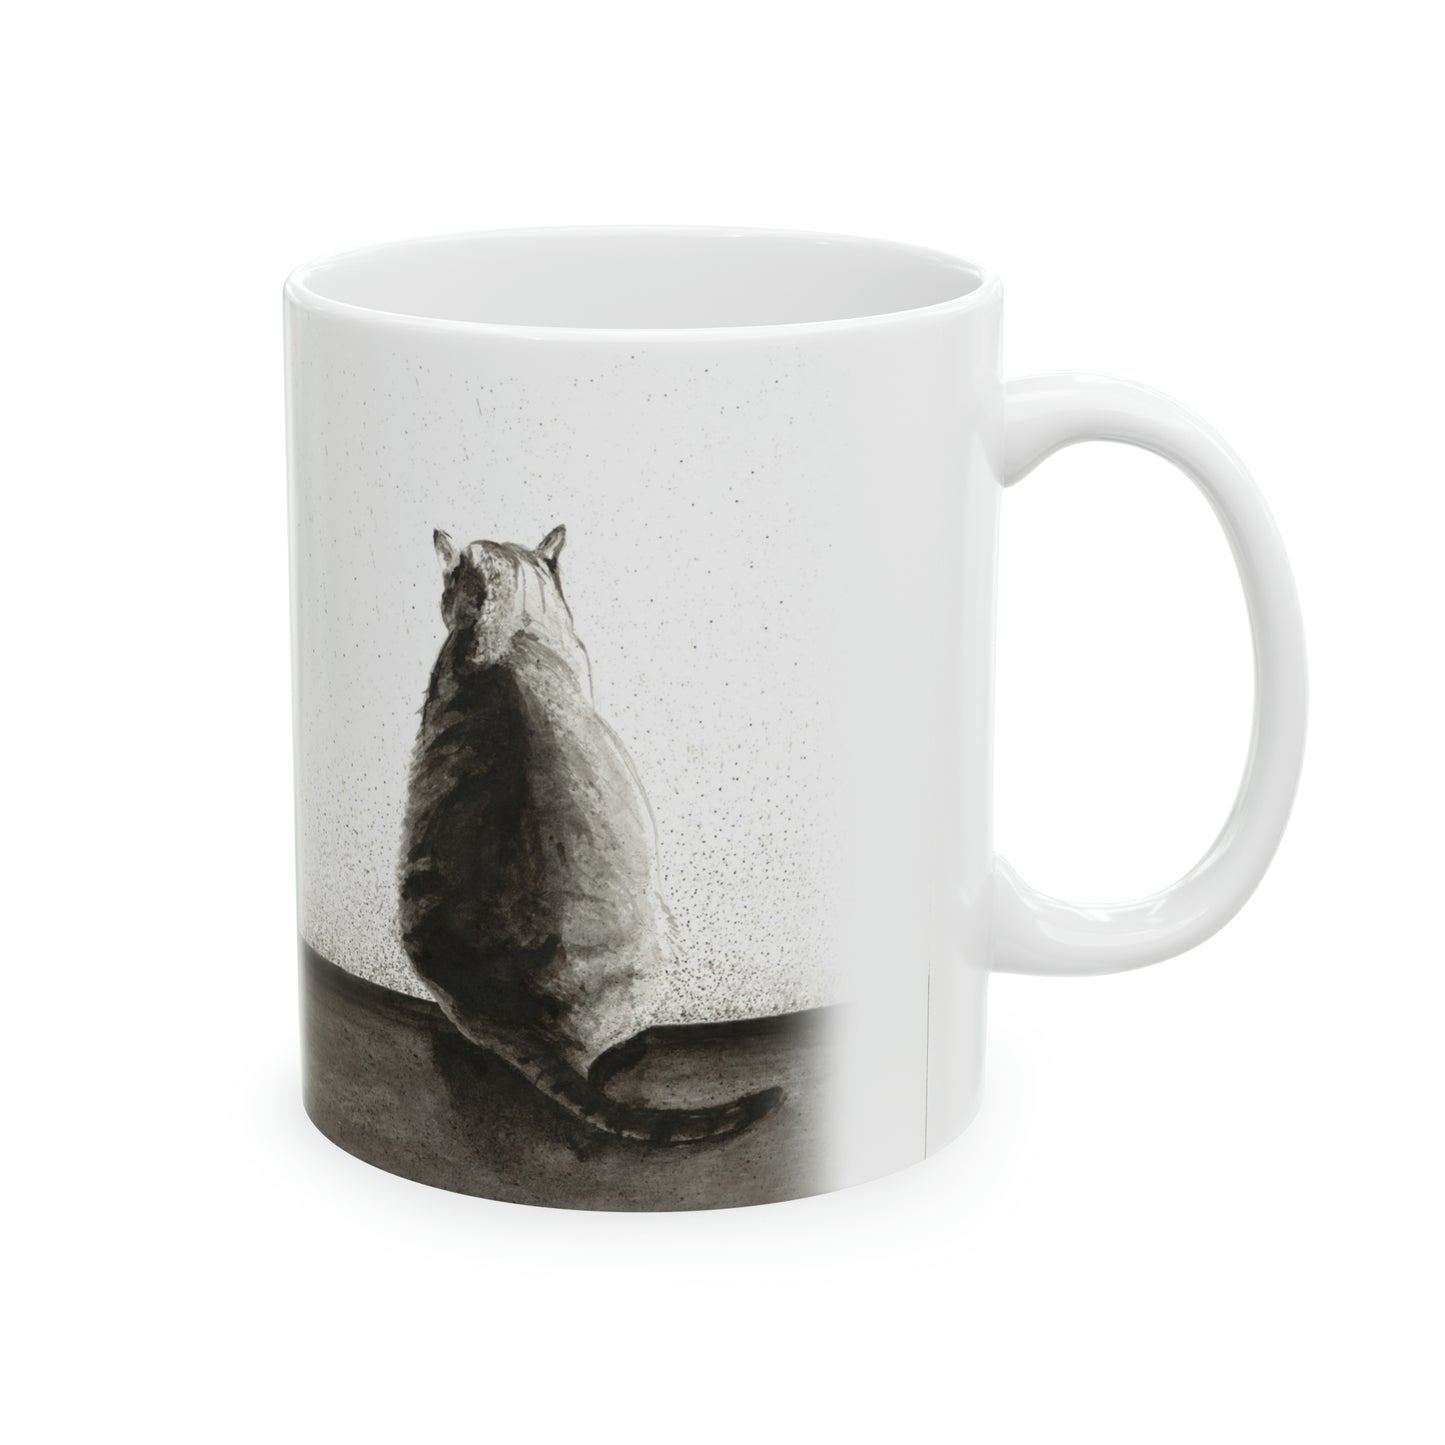 New! Ceramic Mug, 11oz - Memories Cat Art